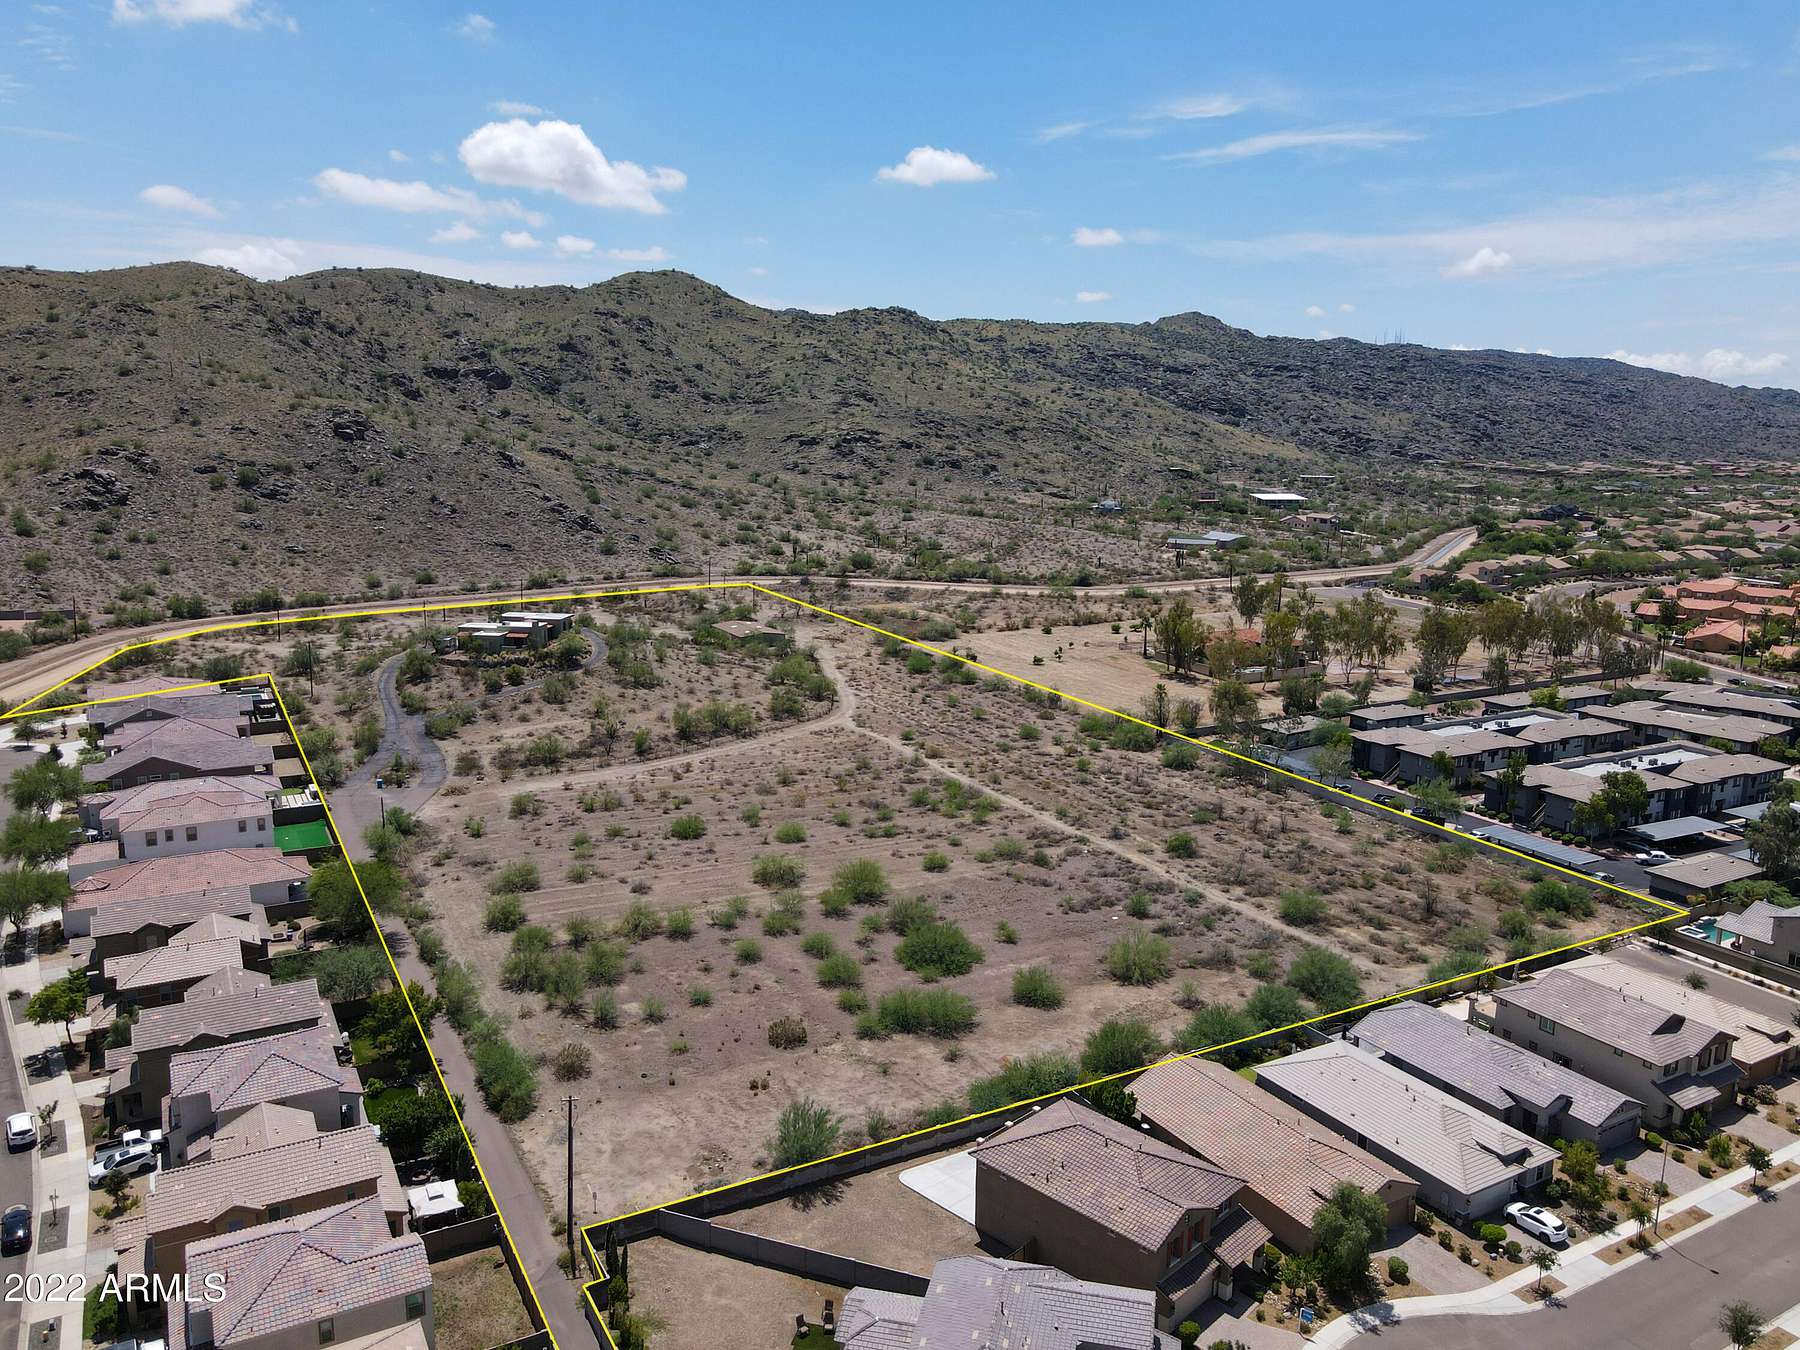 11 Acres of Land for Sale in Phoenix, Arizona